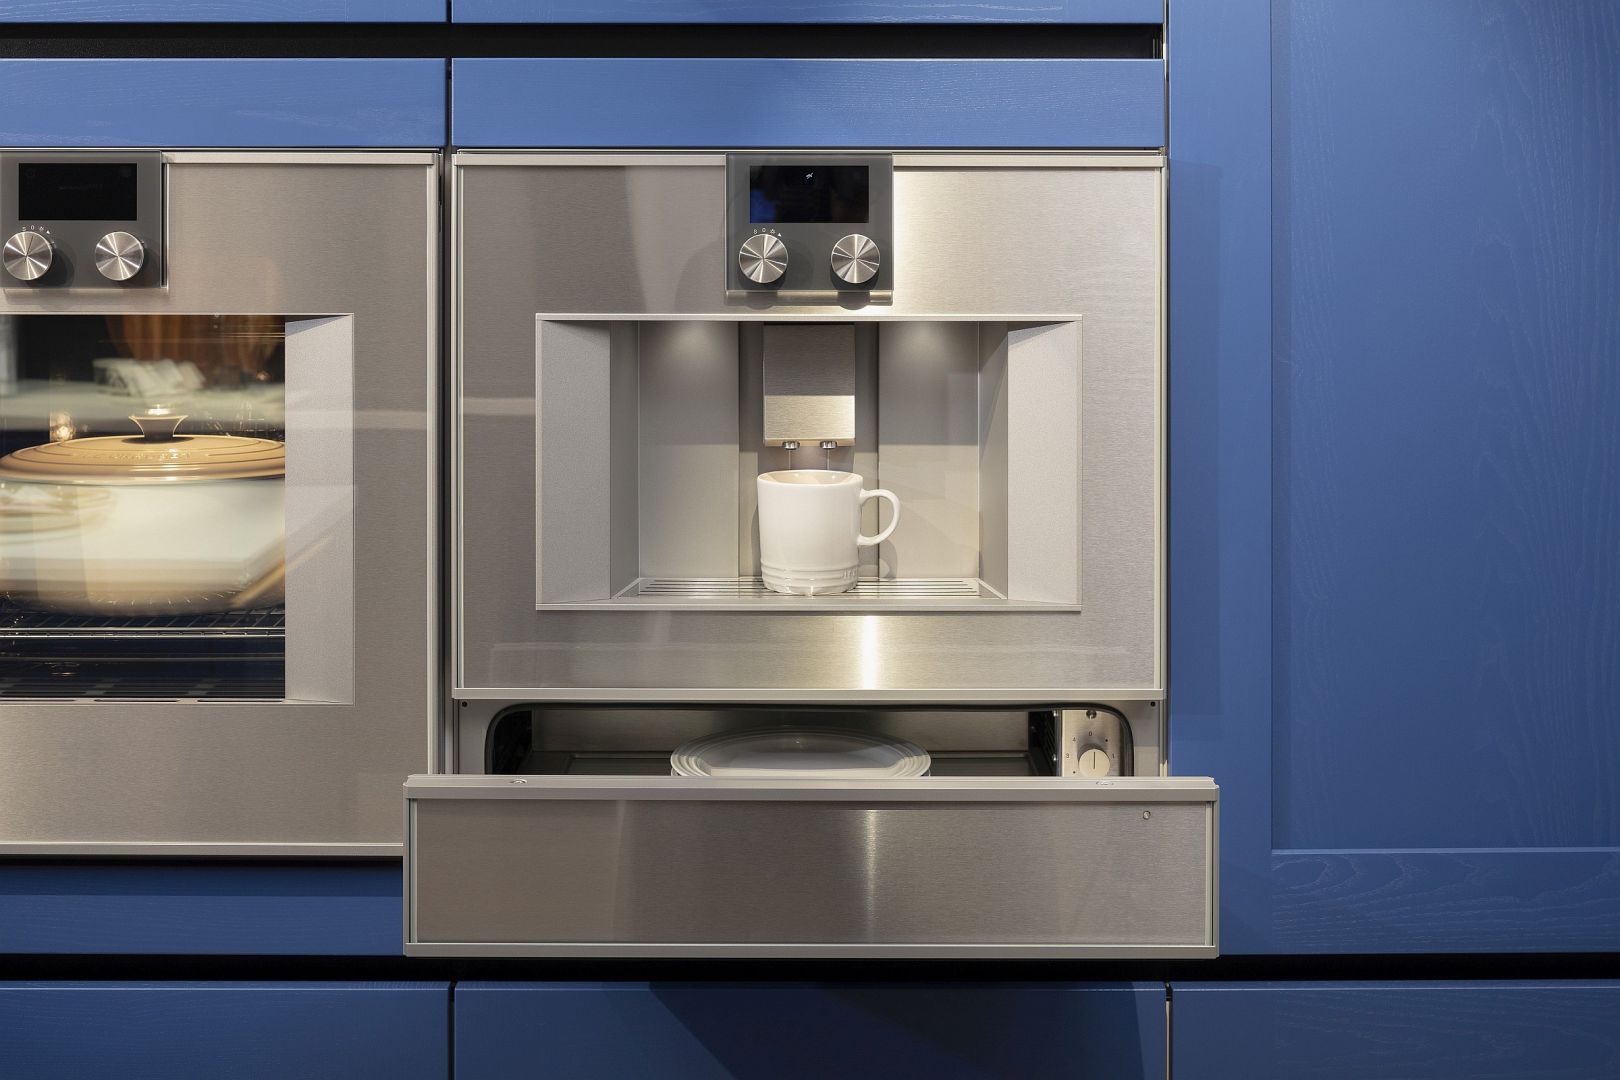 Einbaukaffeevollautomat mit geöffneter Wärmeschublade darunter in saphierblauer Häcker-Küche